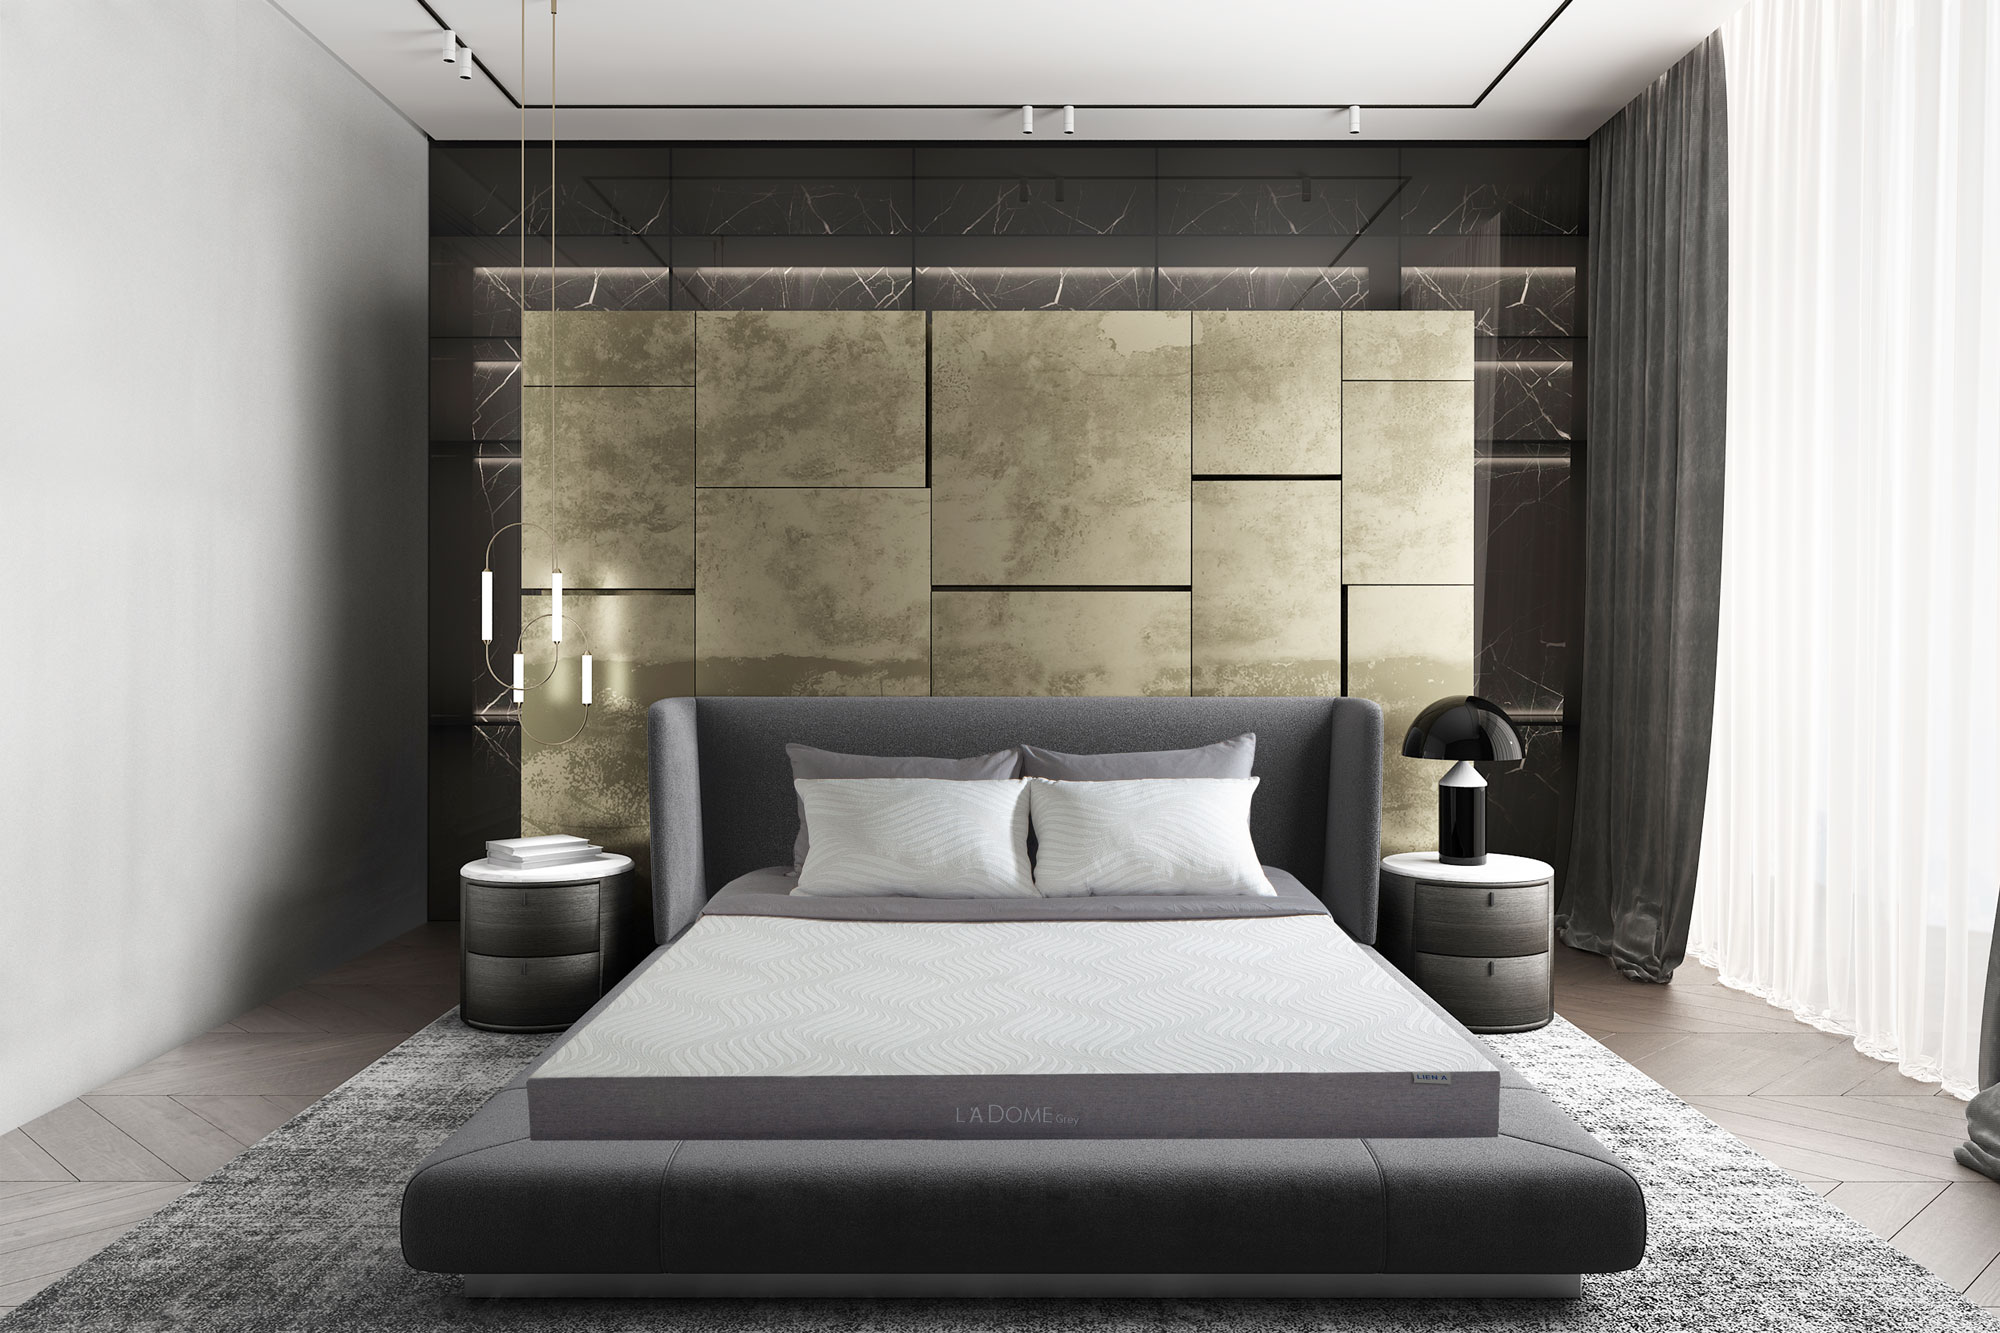 Nệm Liên Á dòng La Dome Grey cao cấp cho không gian phòng ngủ sang trọng